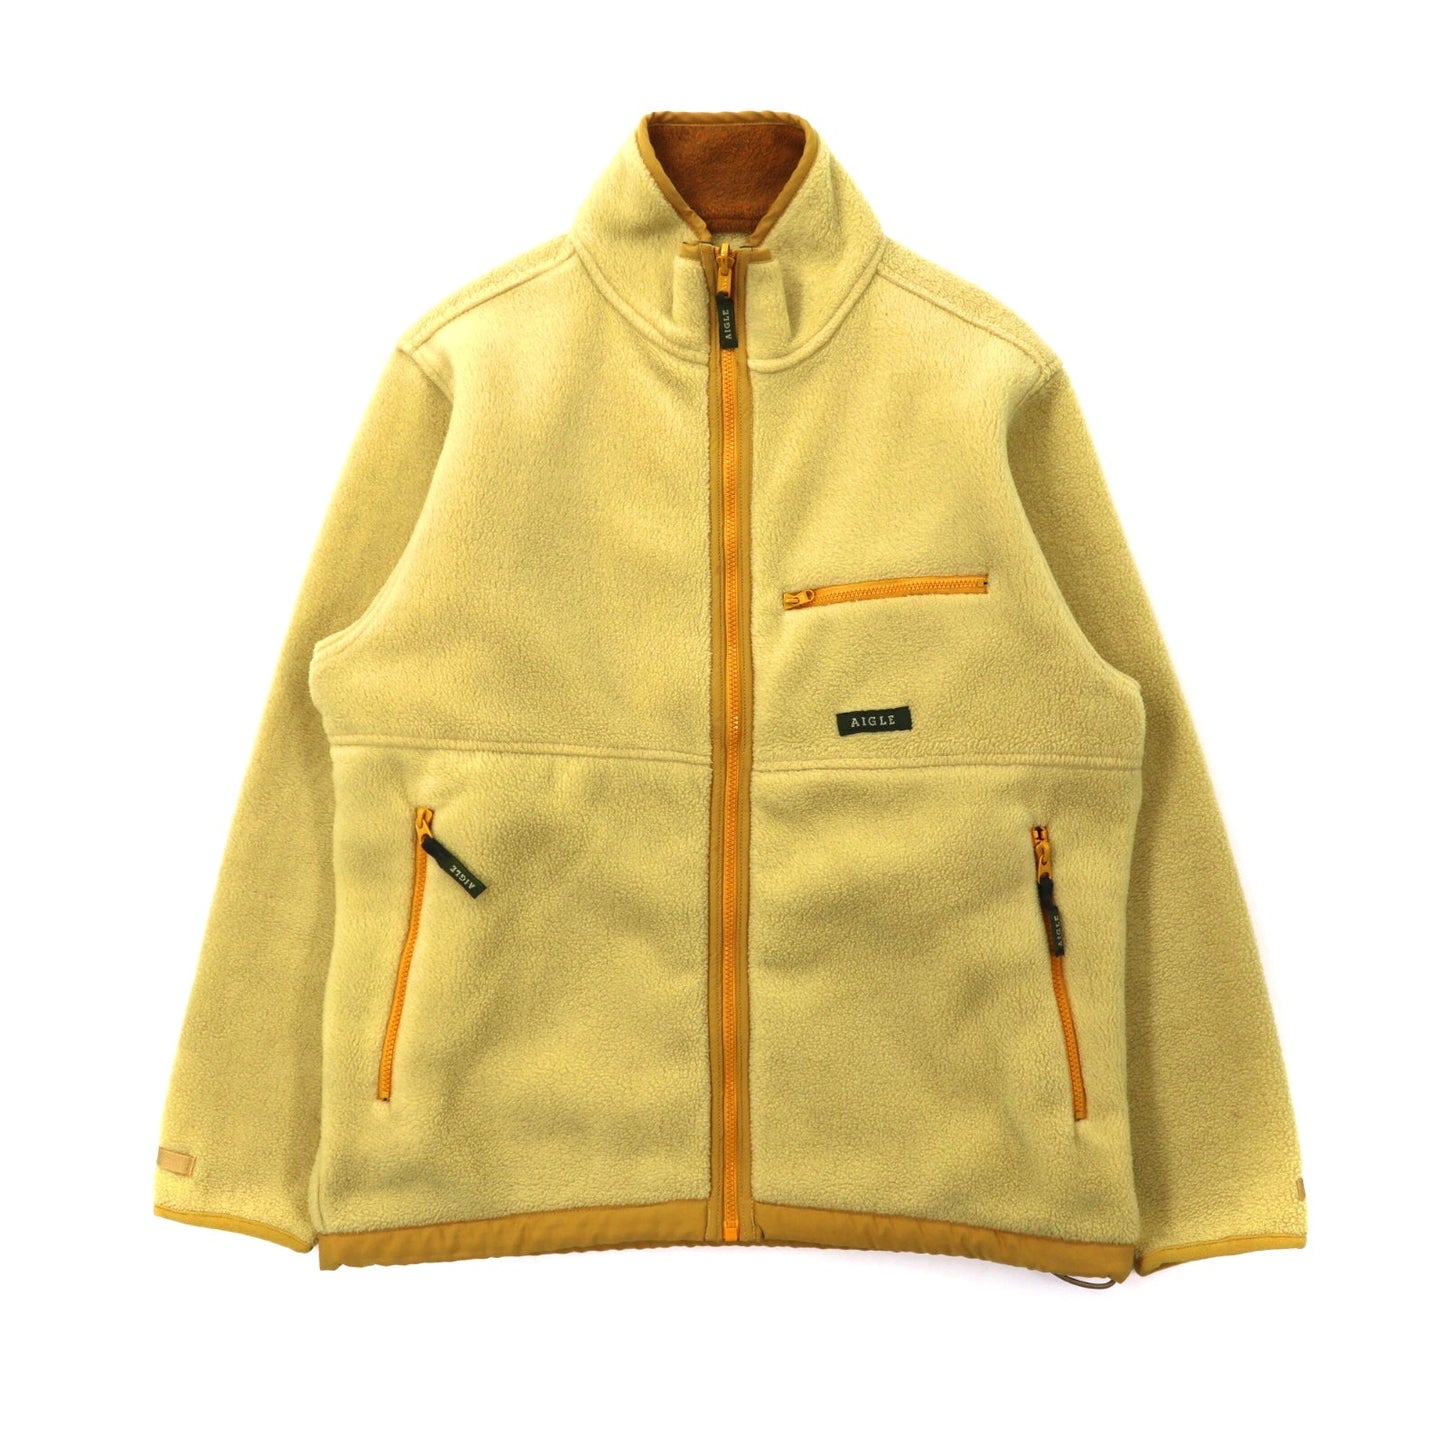 AIGLE Fleece Jacket S Yellow Polyester – 日本然リトテ